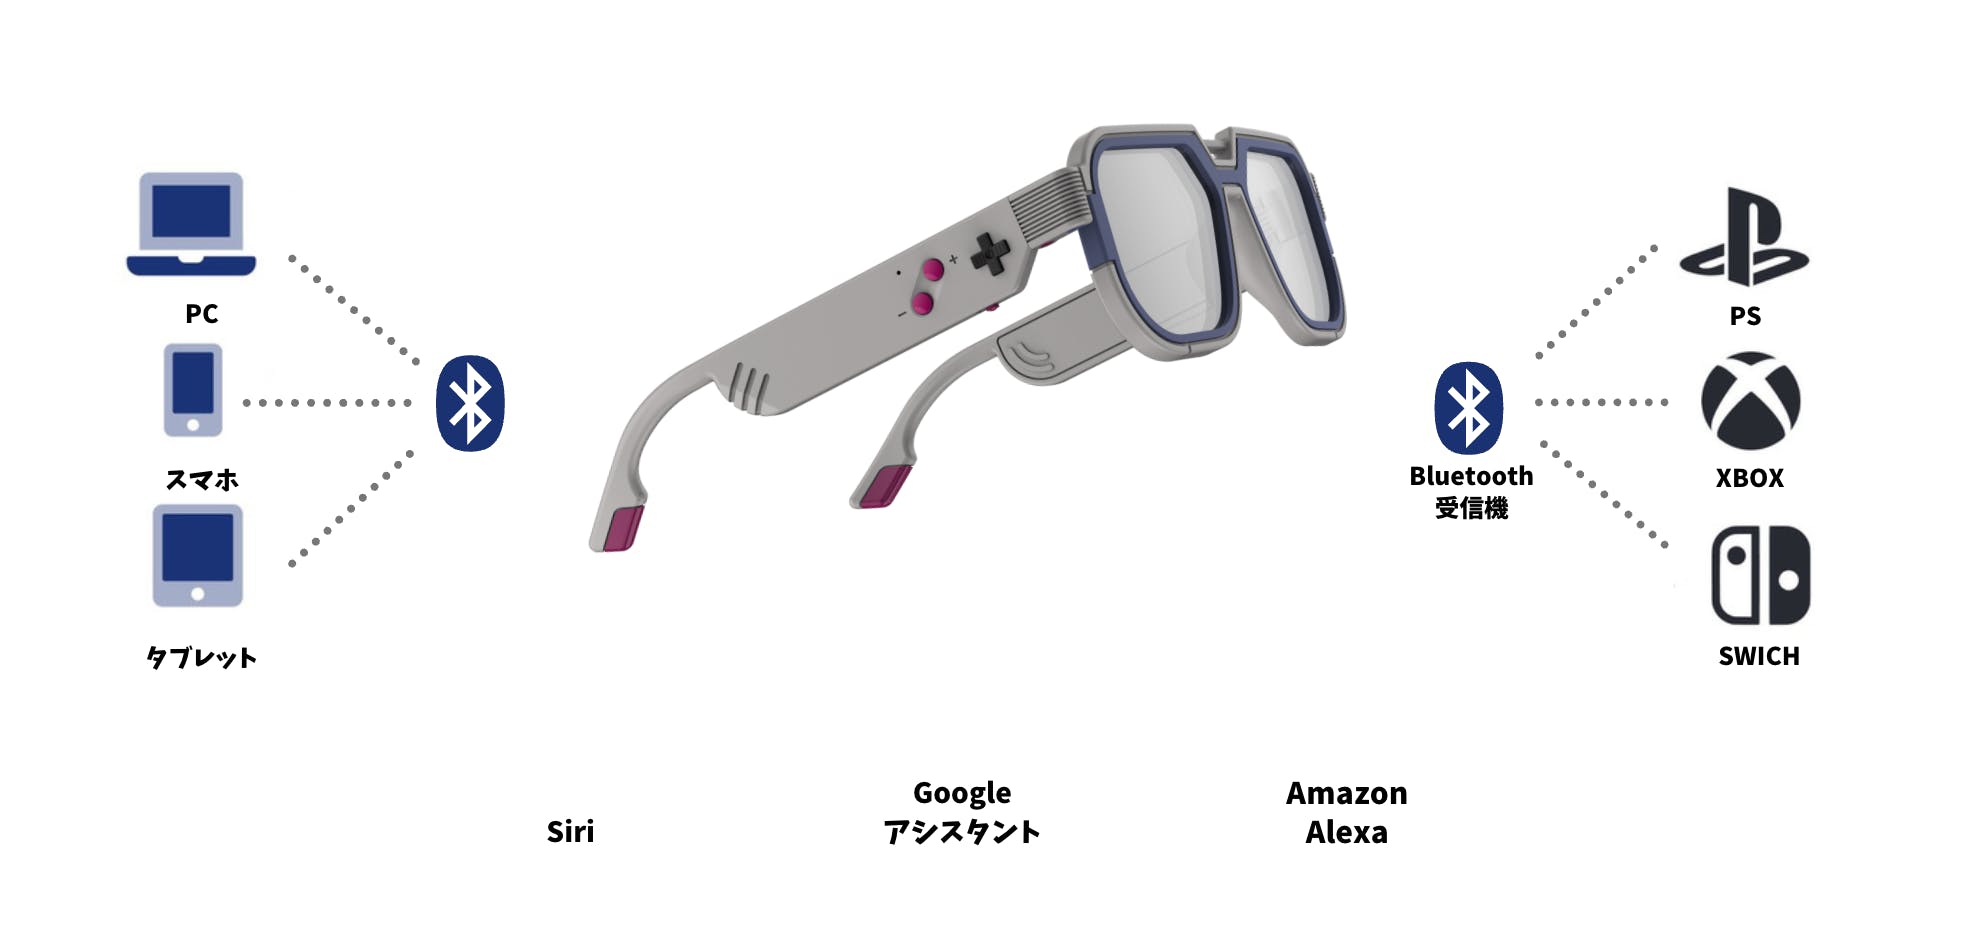 最新アイテムなのにレトロな見た目がたまらないブルーライトカット×オーディオのPCメガネ【GB-30】